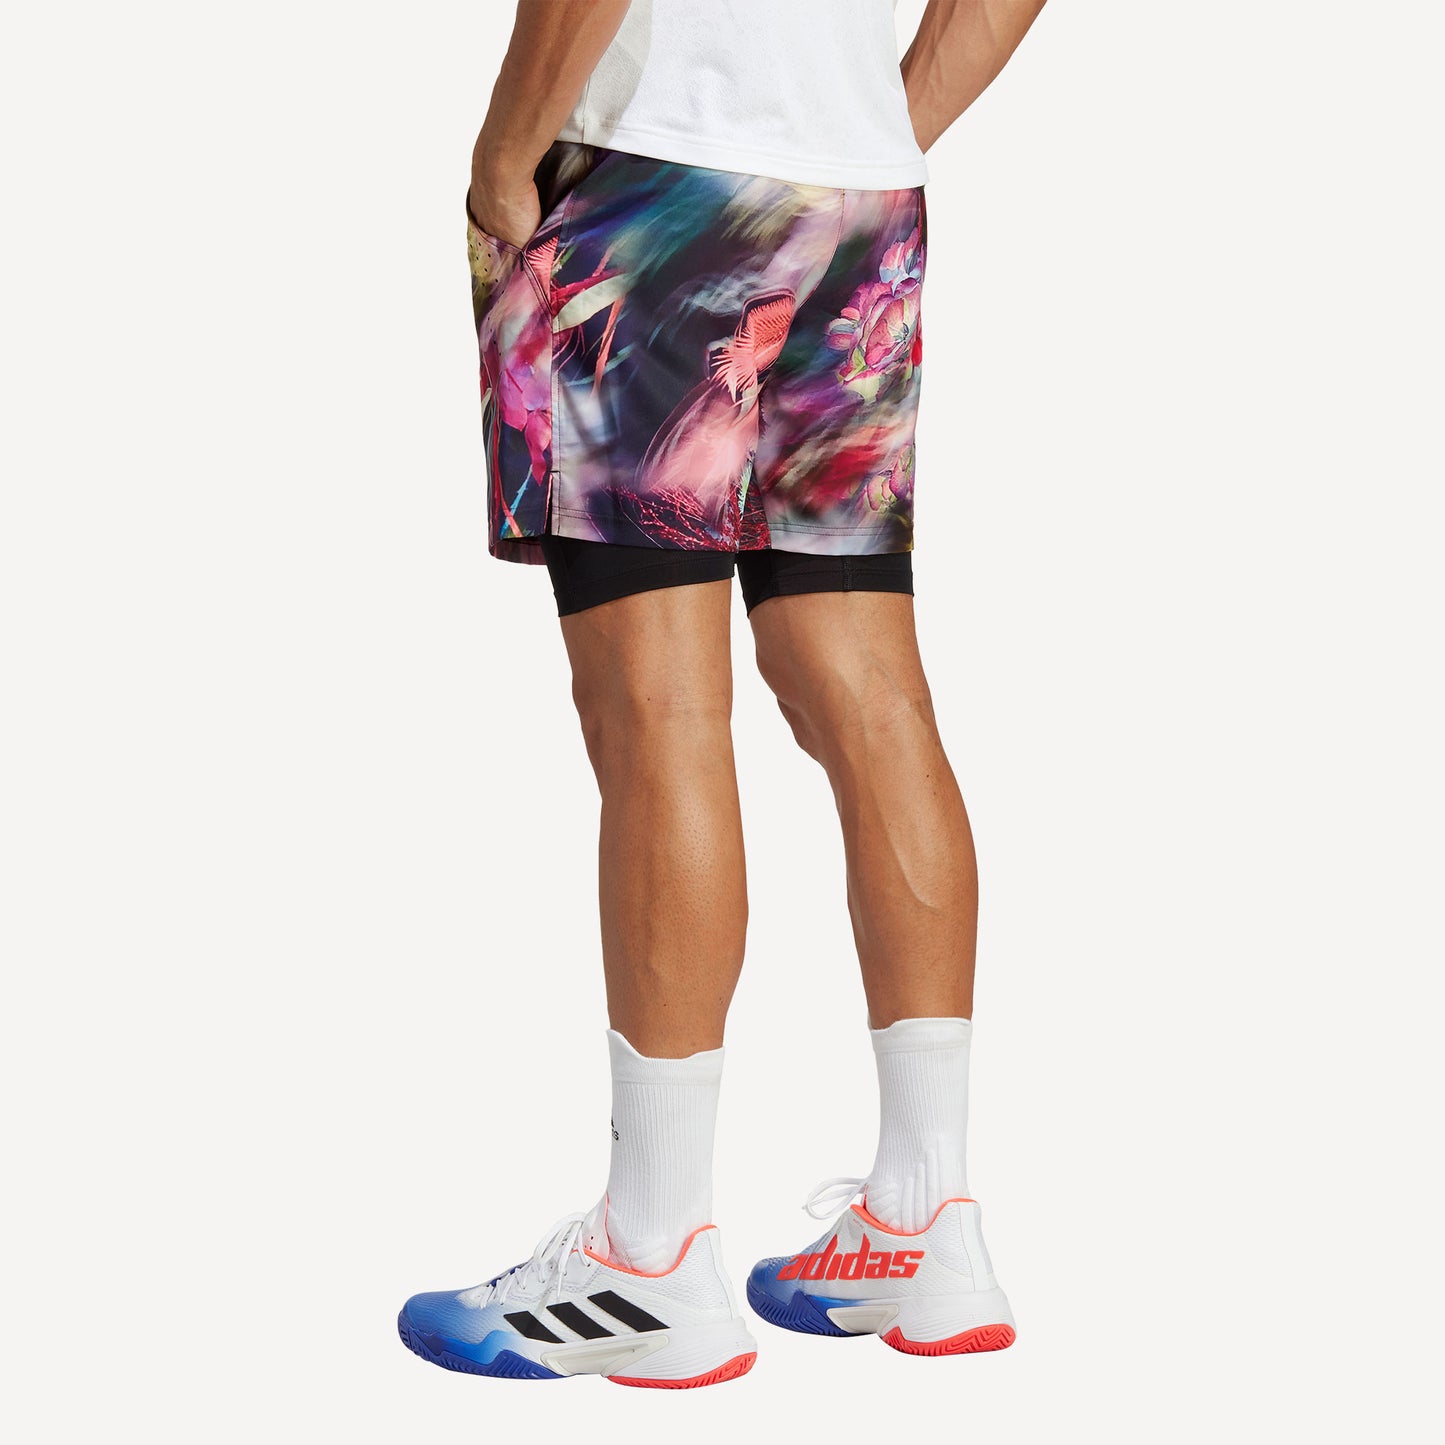 adidas Melbourne Ergo Men's Graphic Tennis Shorts Multicolor (2)